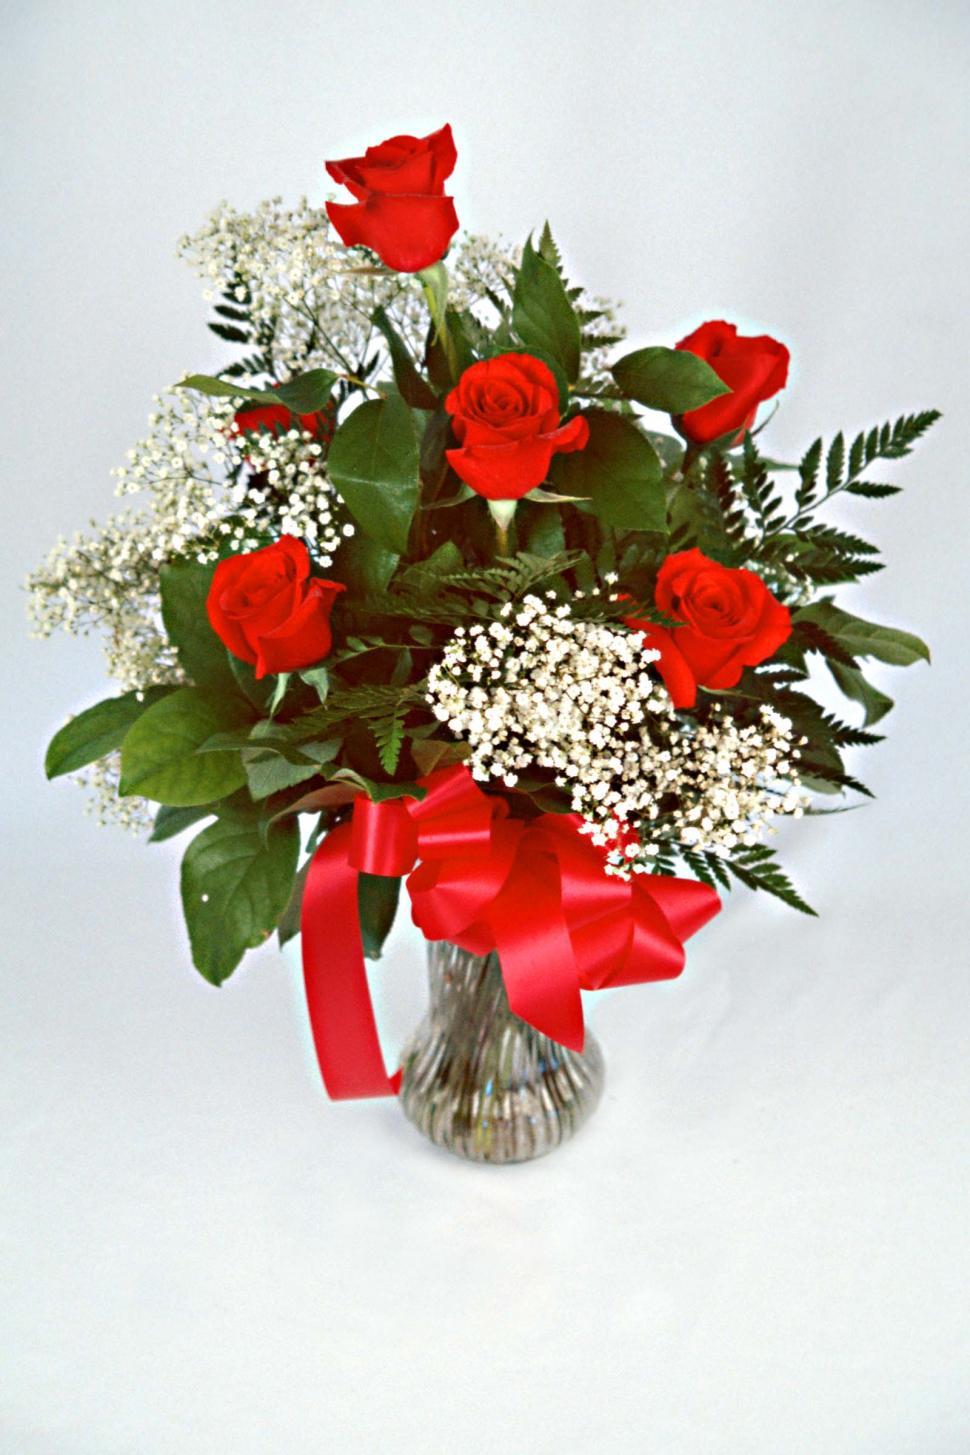 Free Image of flowers roses bouquet valentines date floral florist vase love romantic romance blooms petals arrangement ribbons bows leaves babys breath 